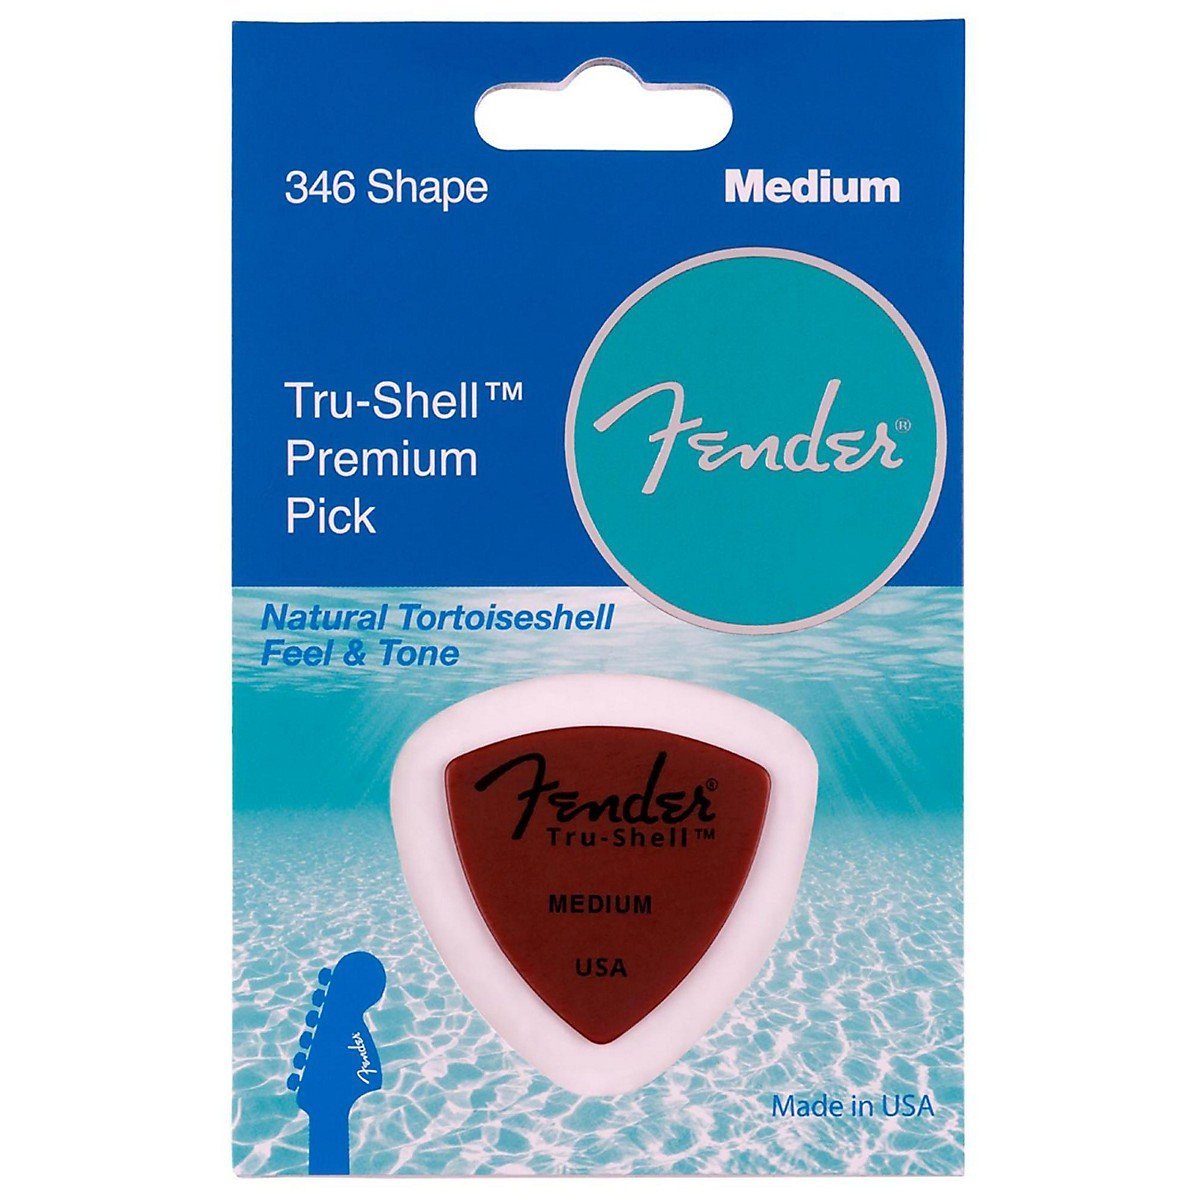 Fender 346 Shape Picks, Tru-Shell, Medium Tortoise Shell Pick